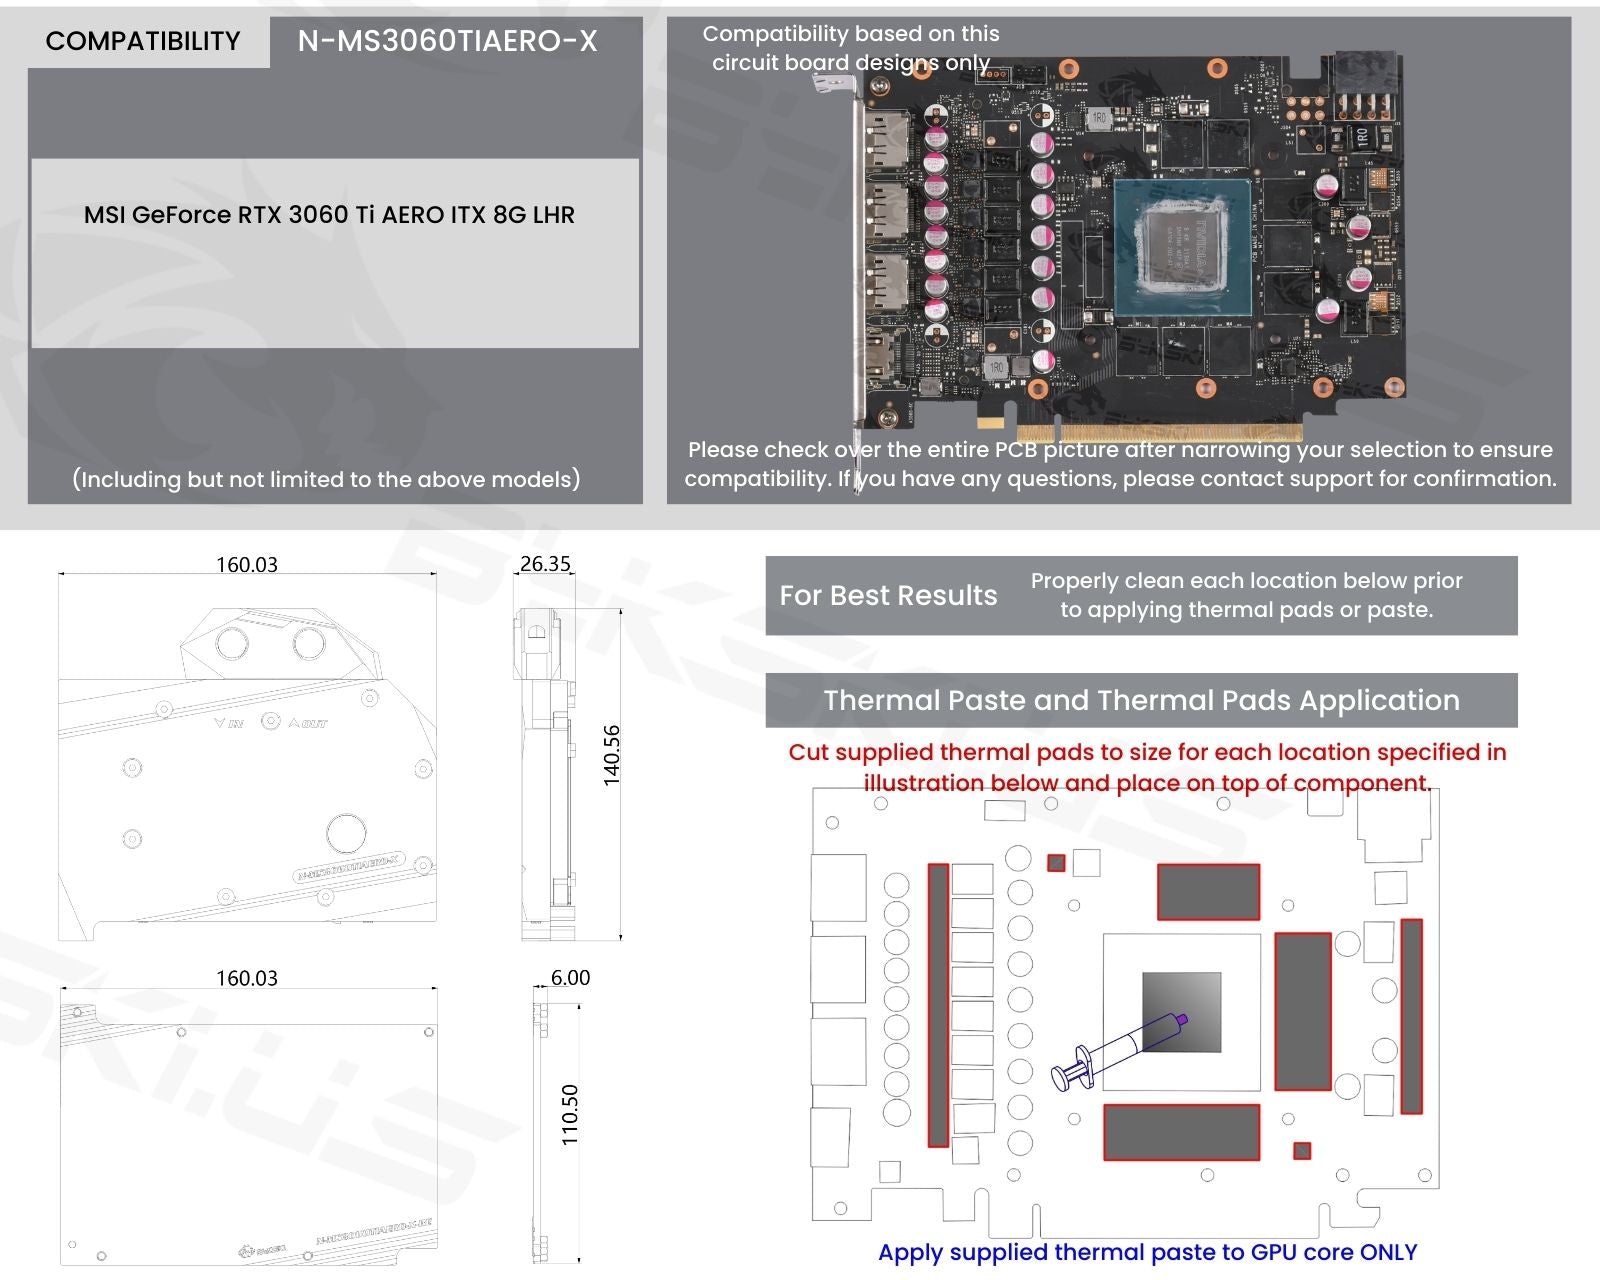 MSI GeForce RTX 3060 Ti AERO ITX 8G LHR